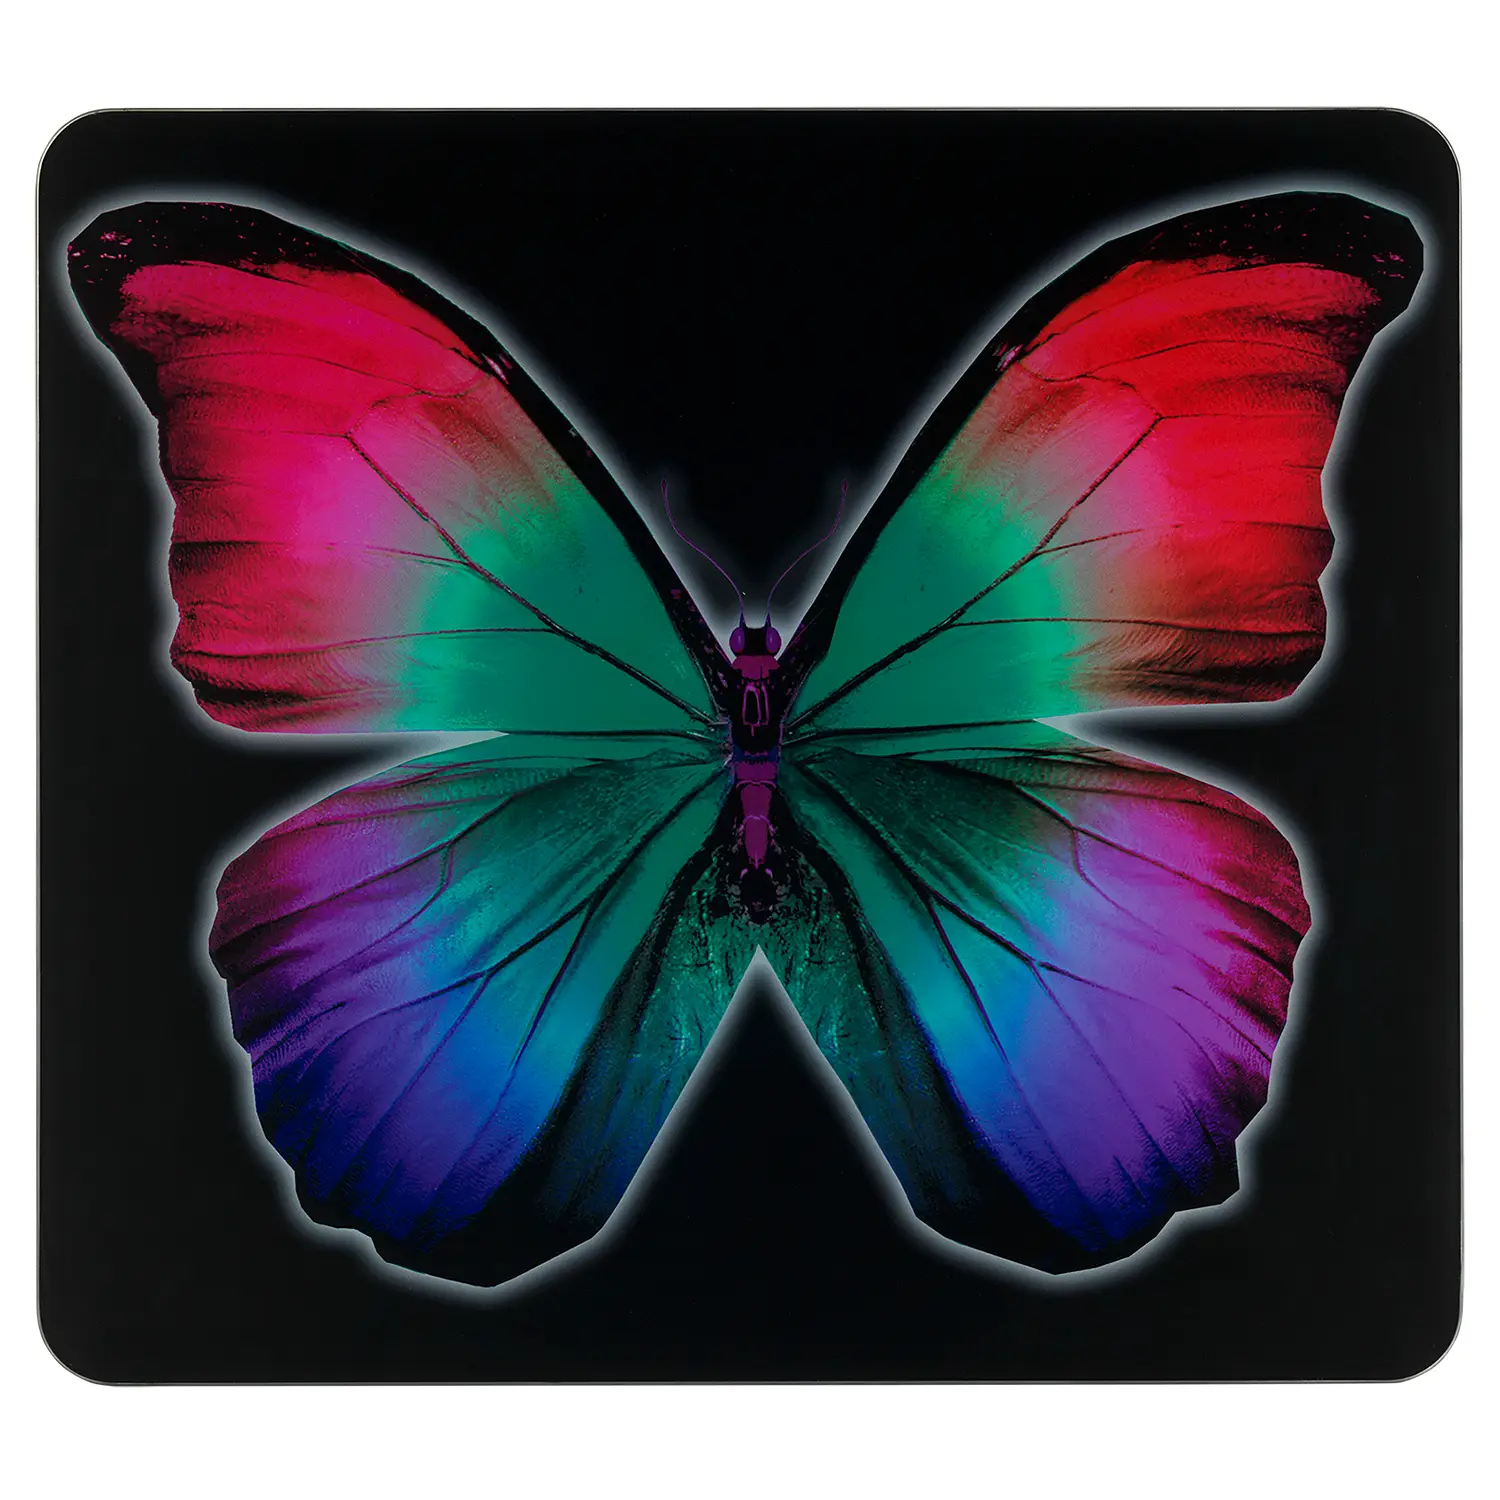 by Night Multi-Platte Butterfly